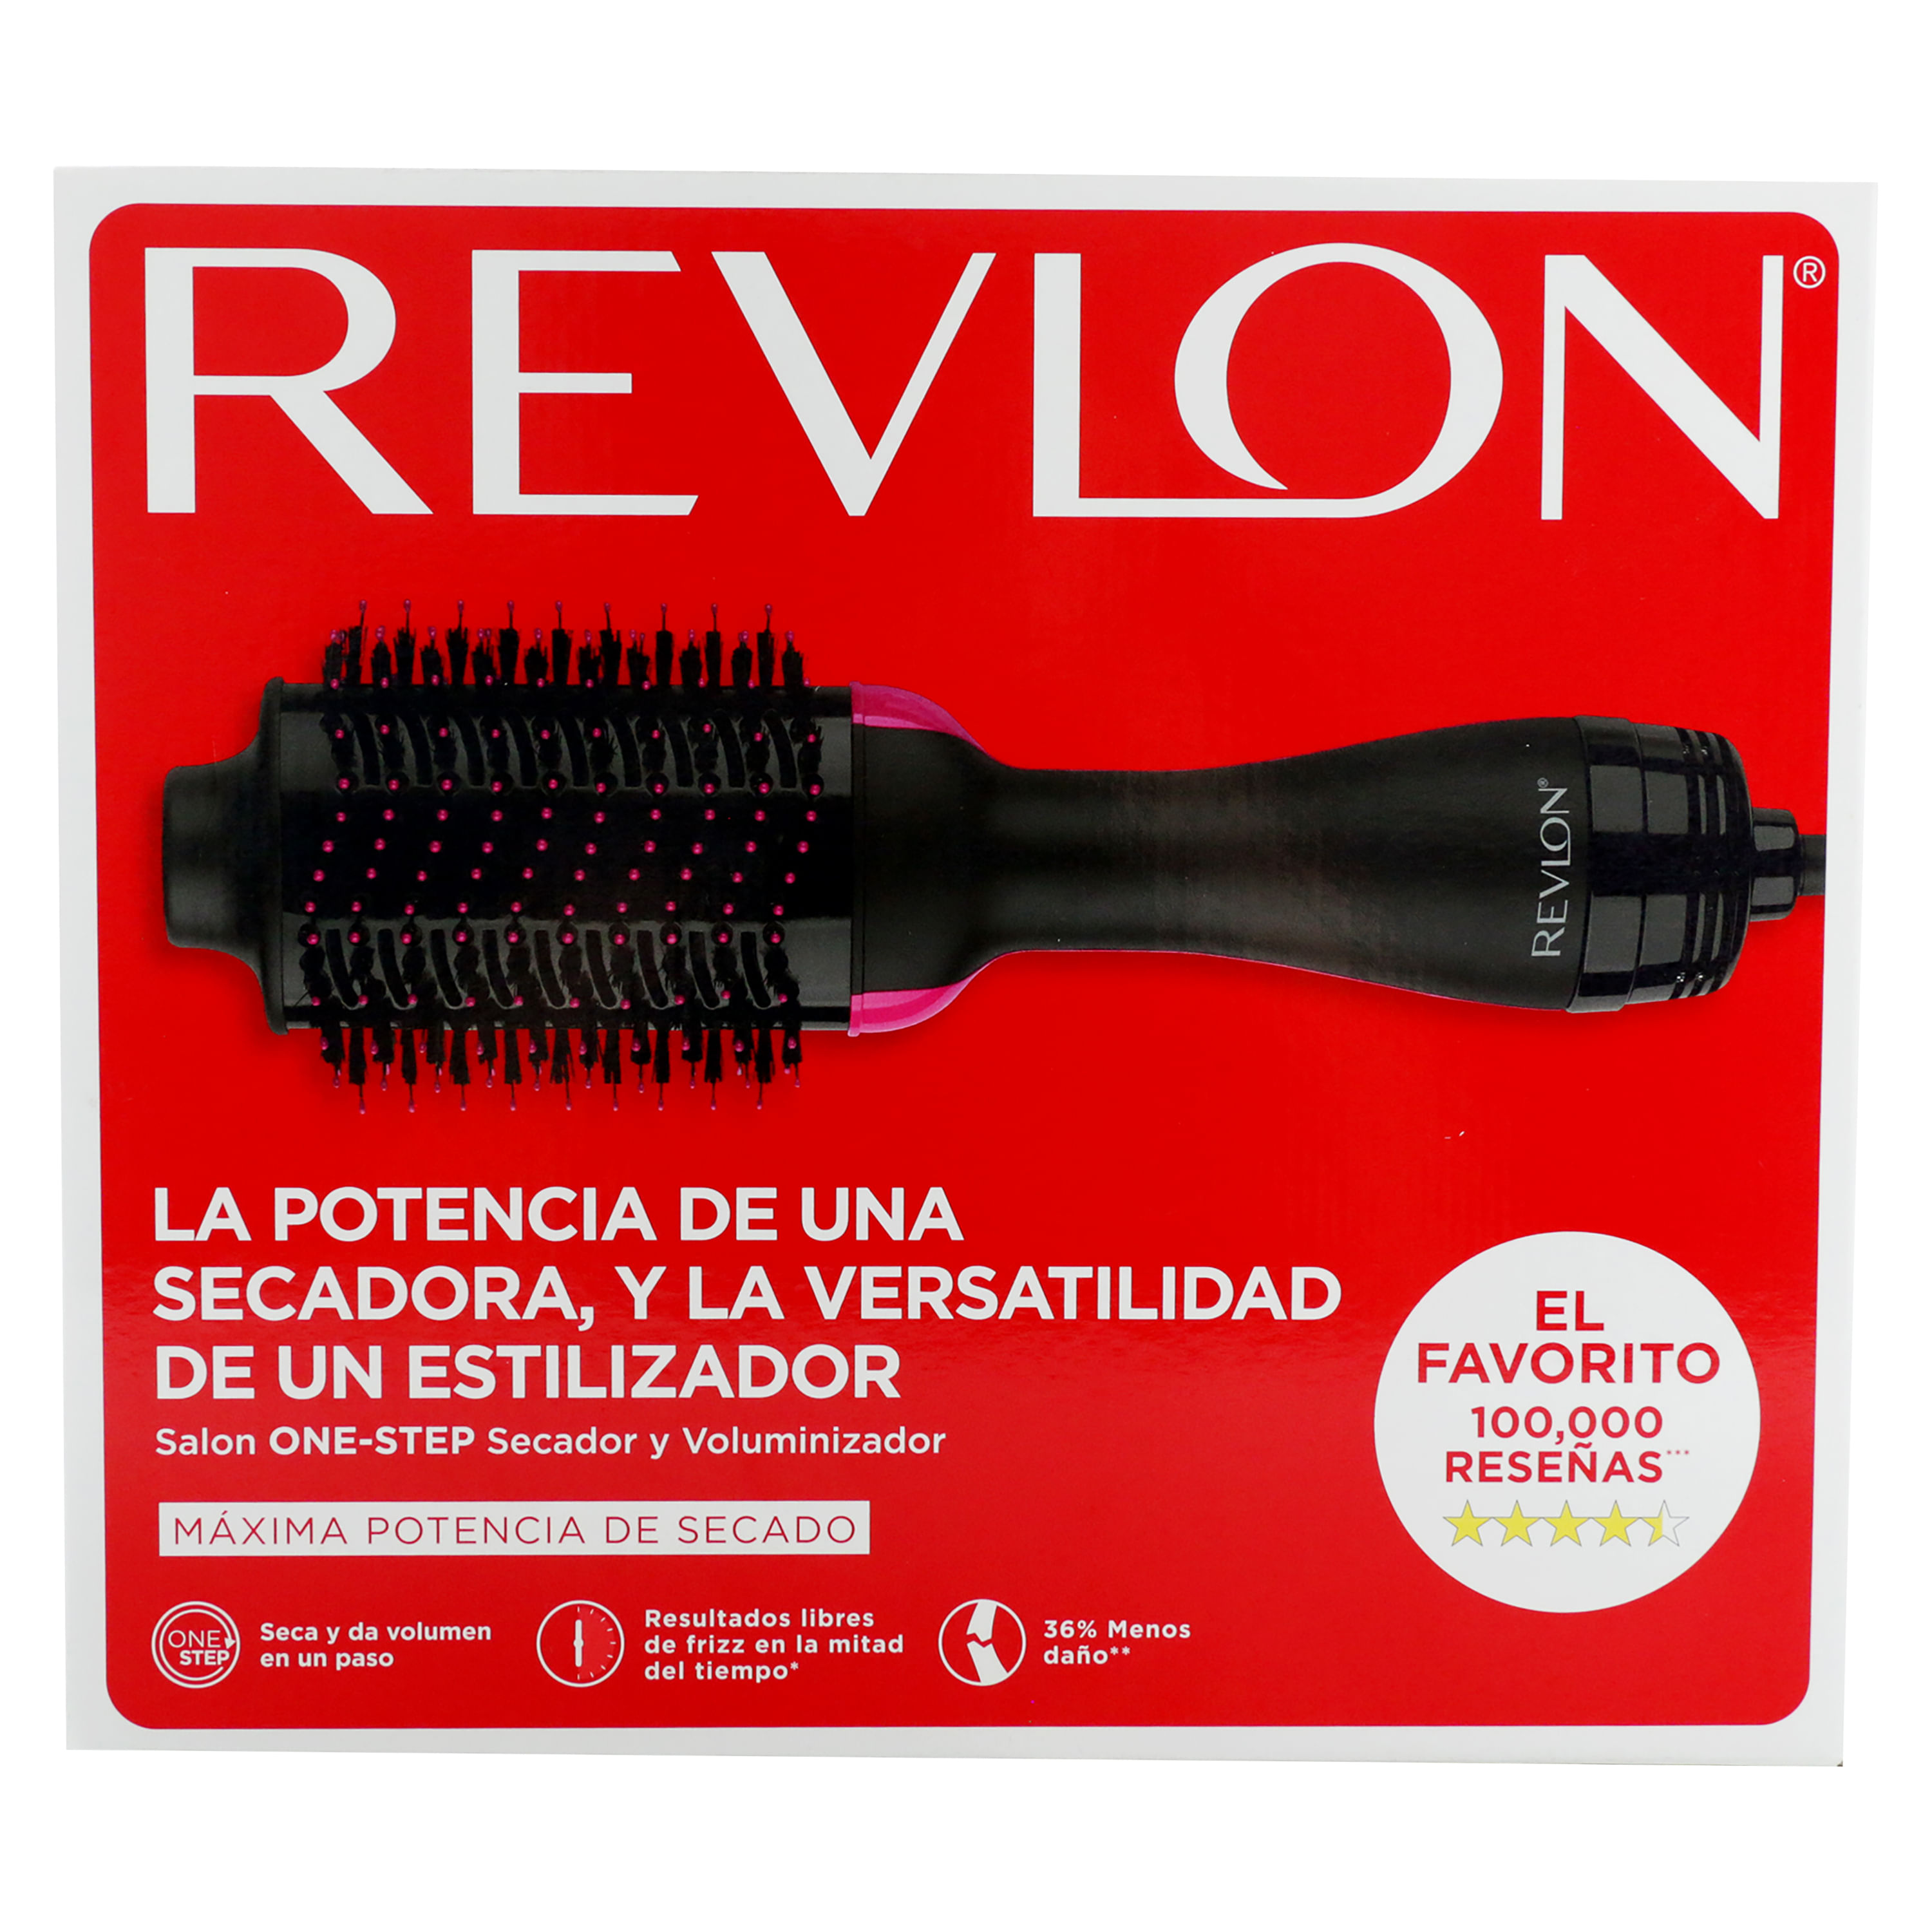 Cepillo RevlonOne Step, secador y voluminizador